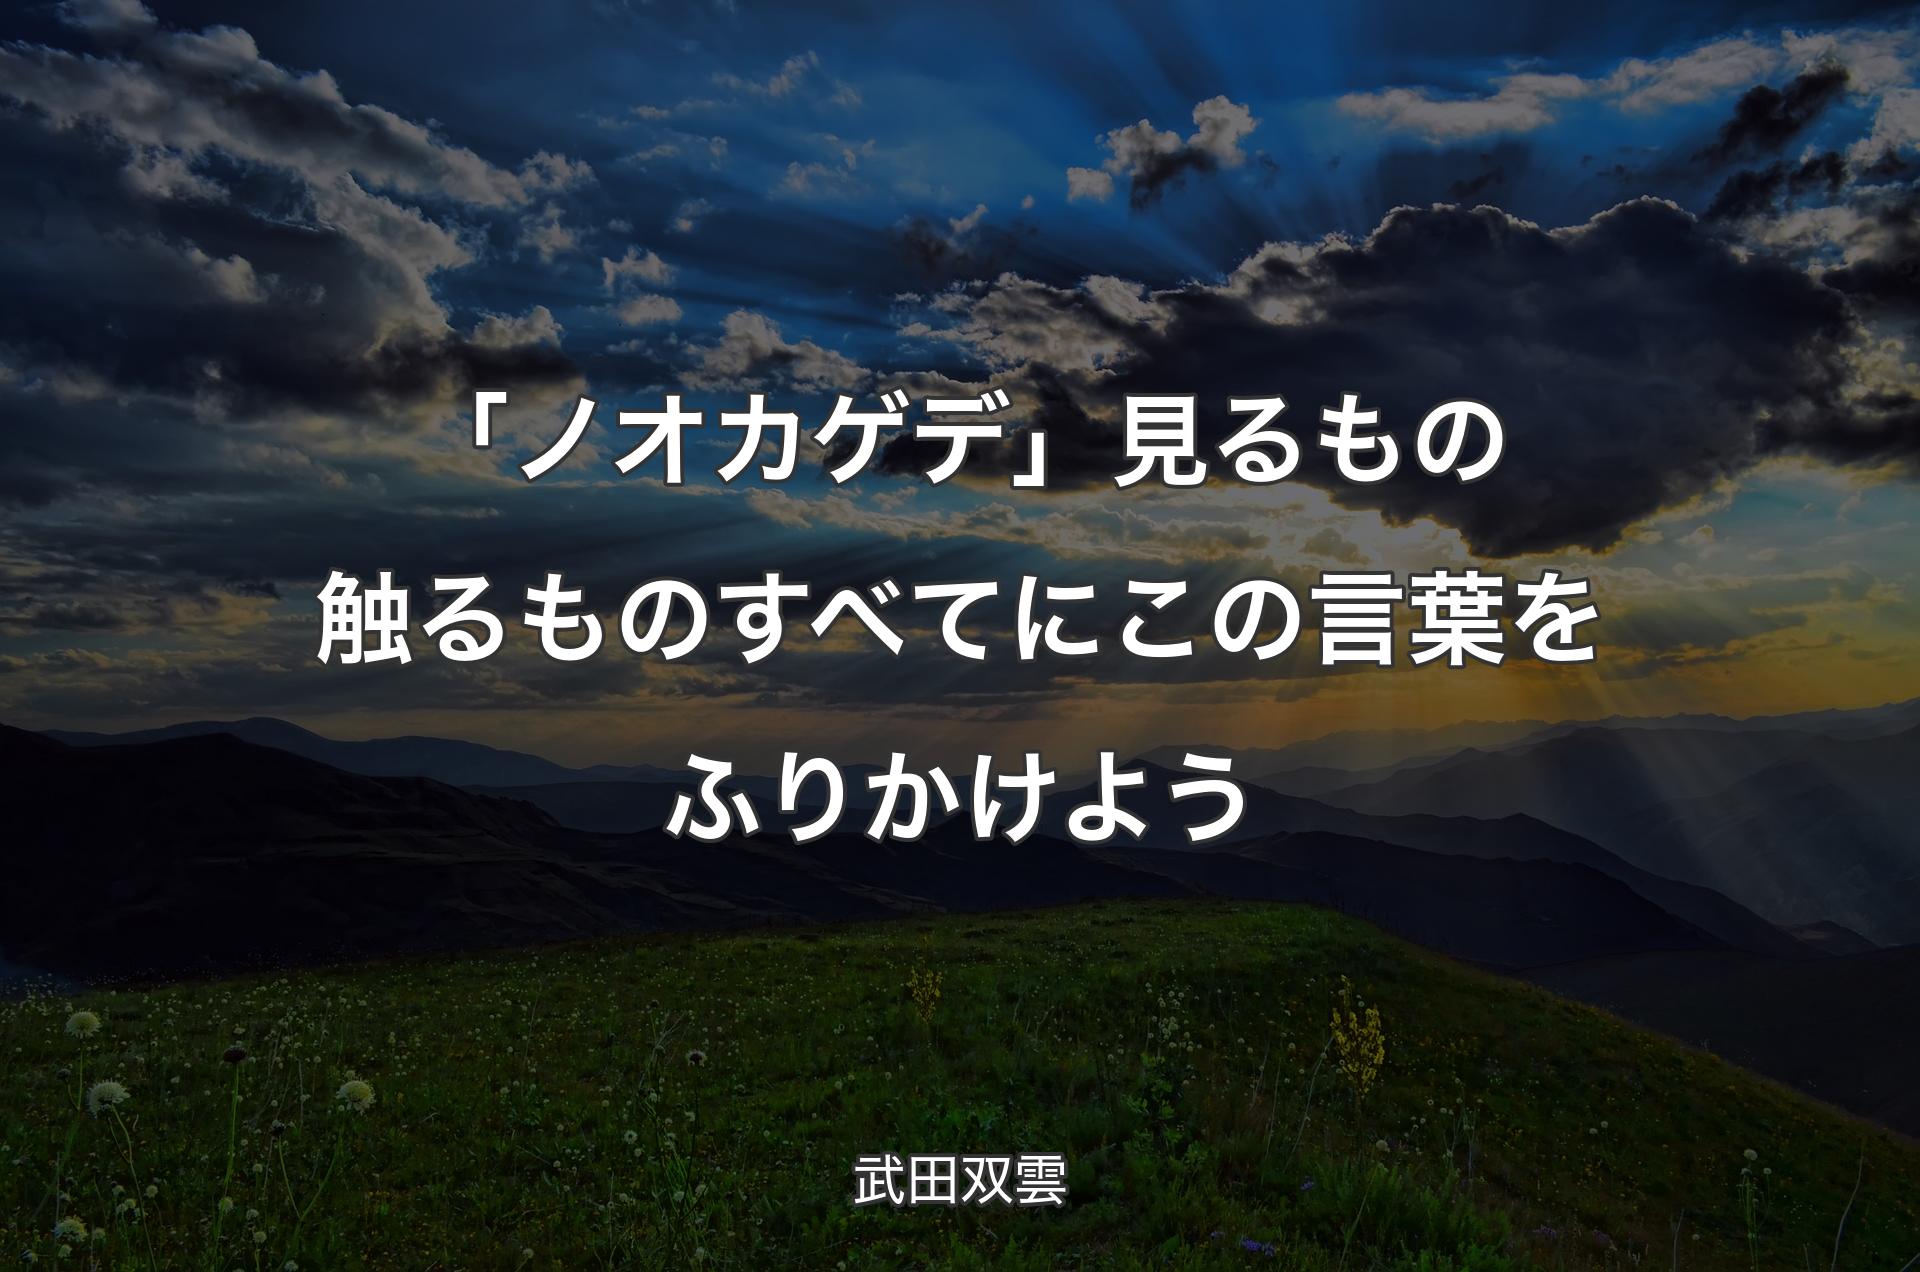 「ノオカゲデ」見るもの触るものすべてにこの言葉をふりかけよう - 武田双雲